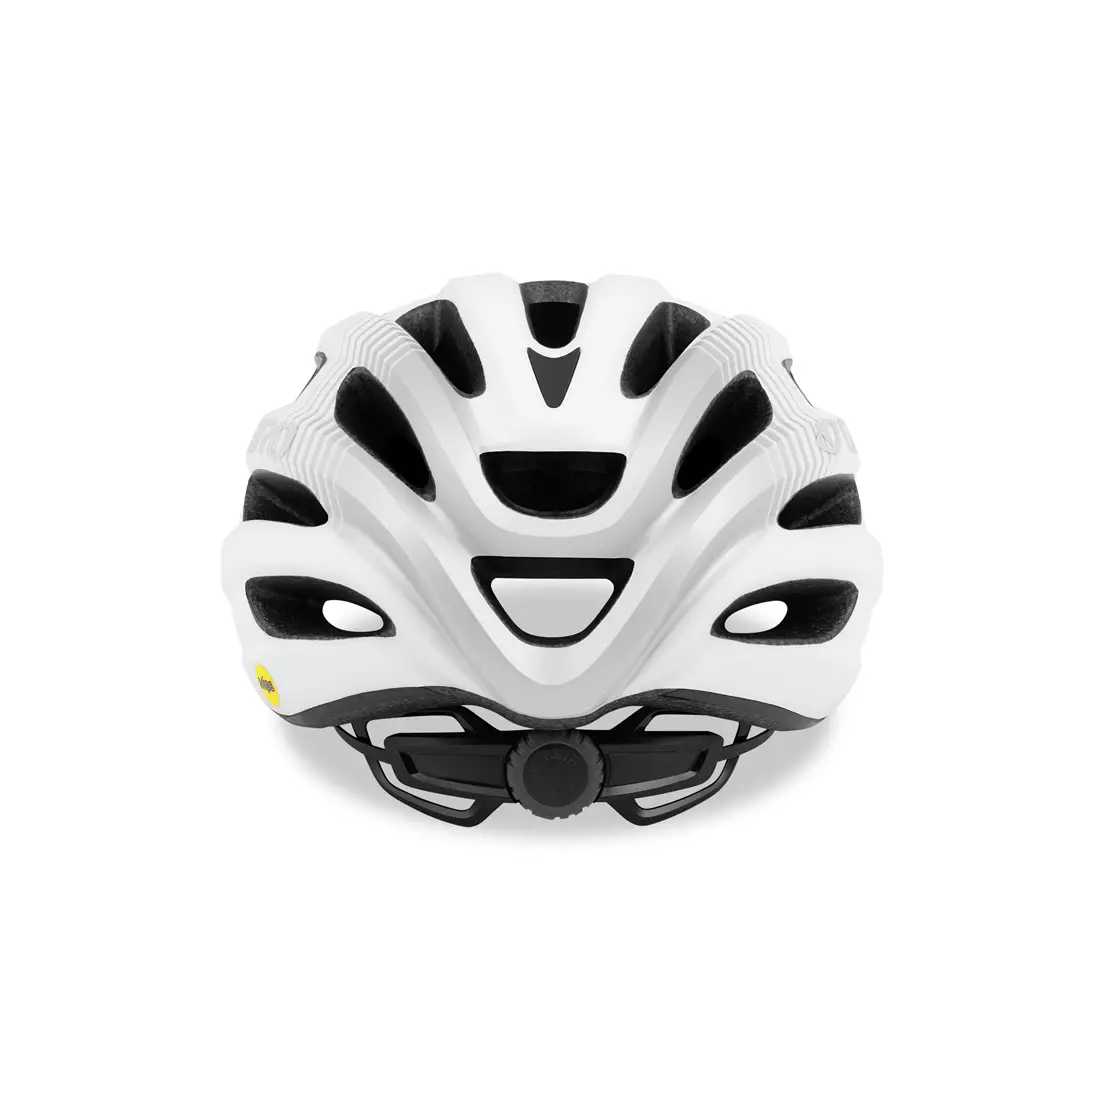 GIRO Rennrad-Helm ISODE INTEGRATED MIPS matte white GR-7089225